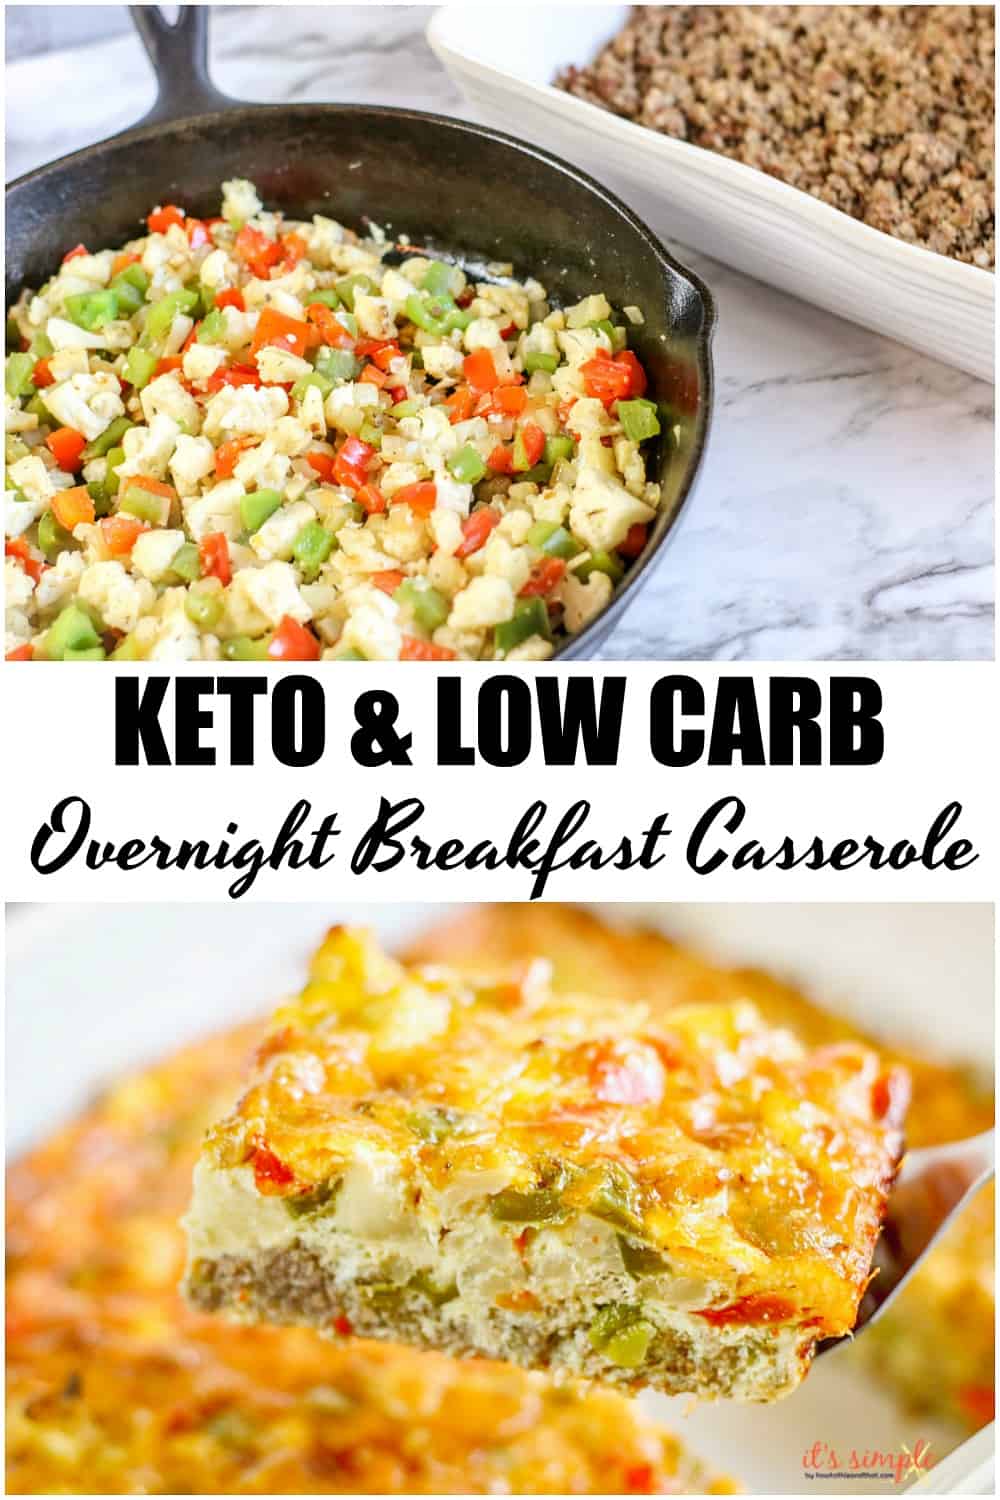 Easy Keto Overnight Breakfast Casserole - ONLY 2 NET CARBS